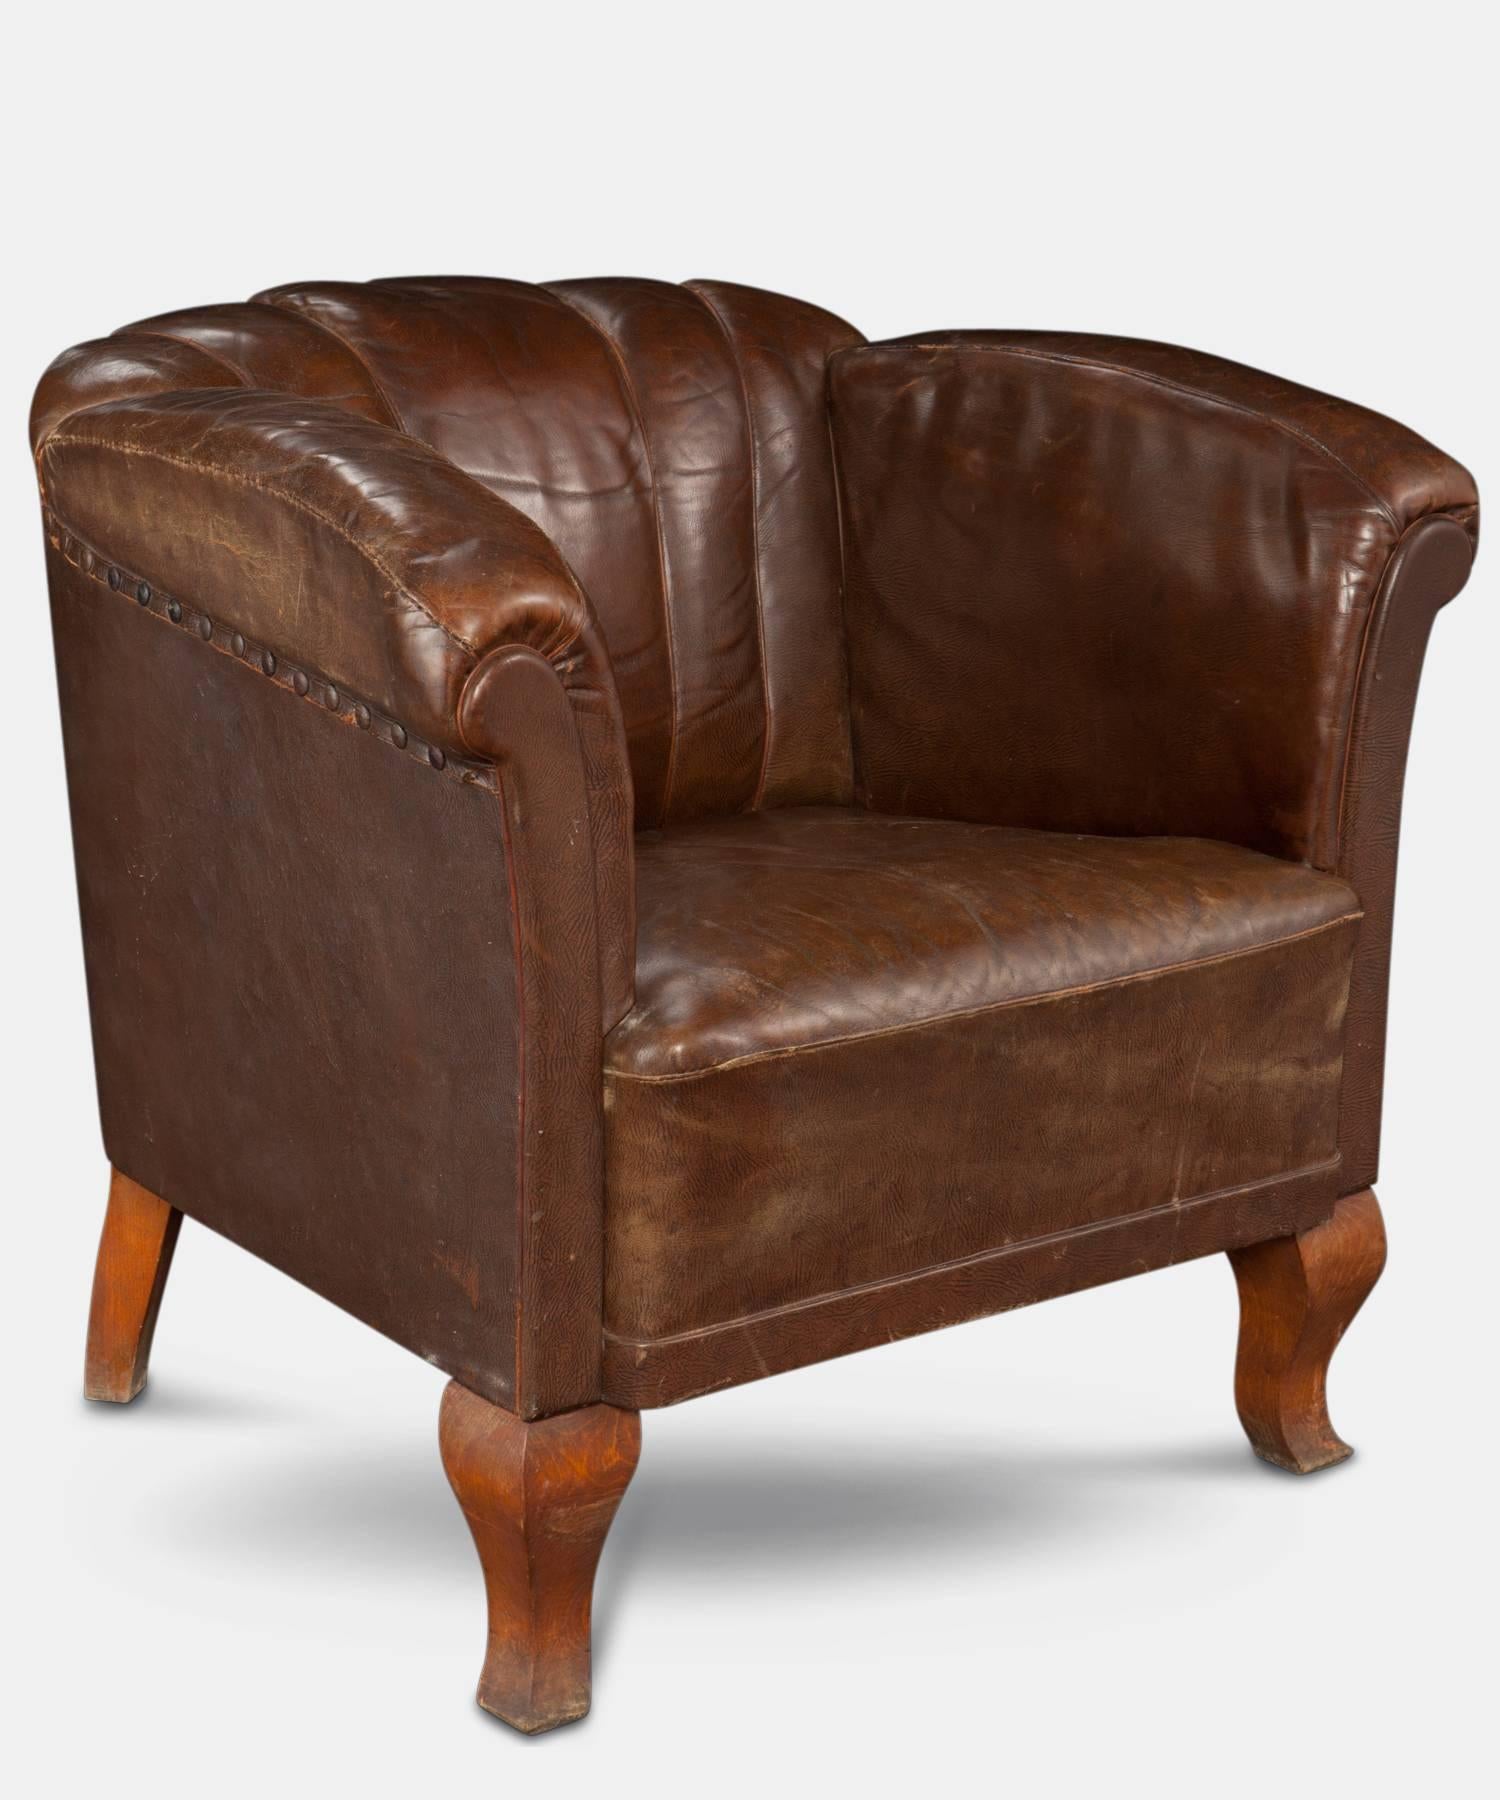 Original leather with oak cabriole legs.